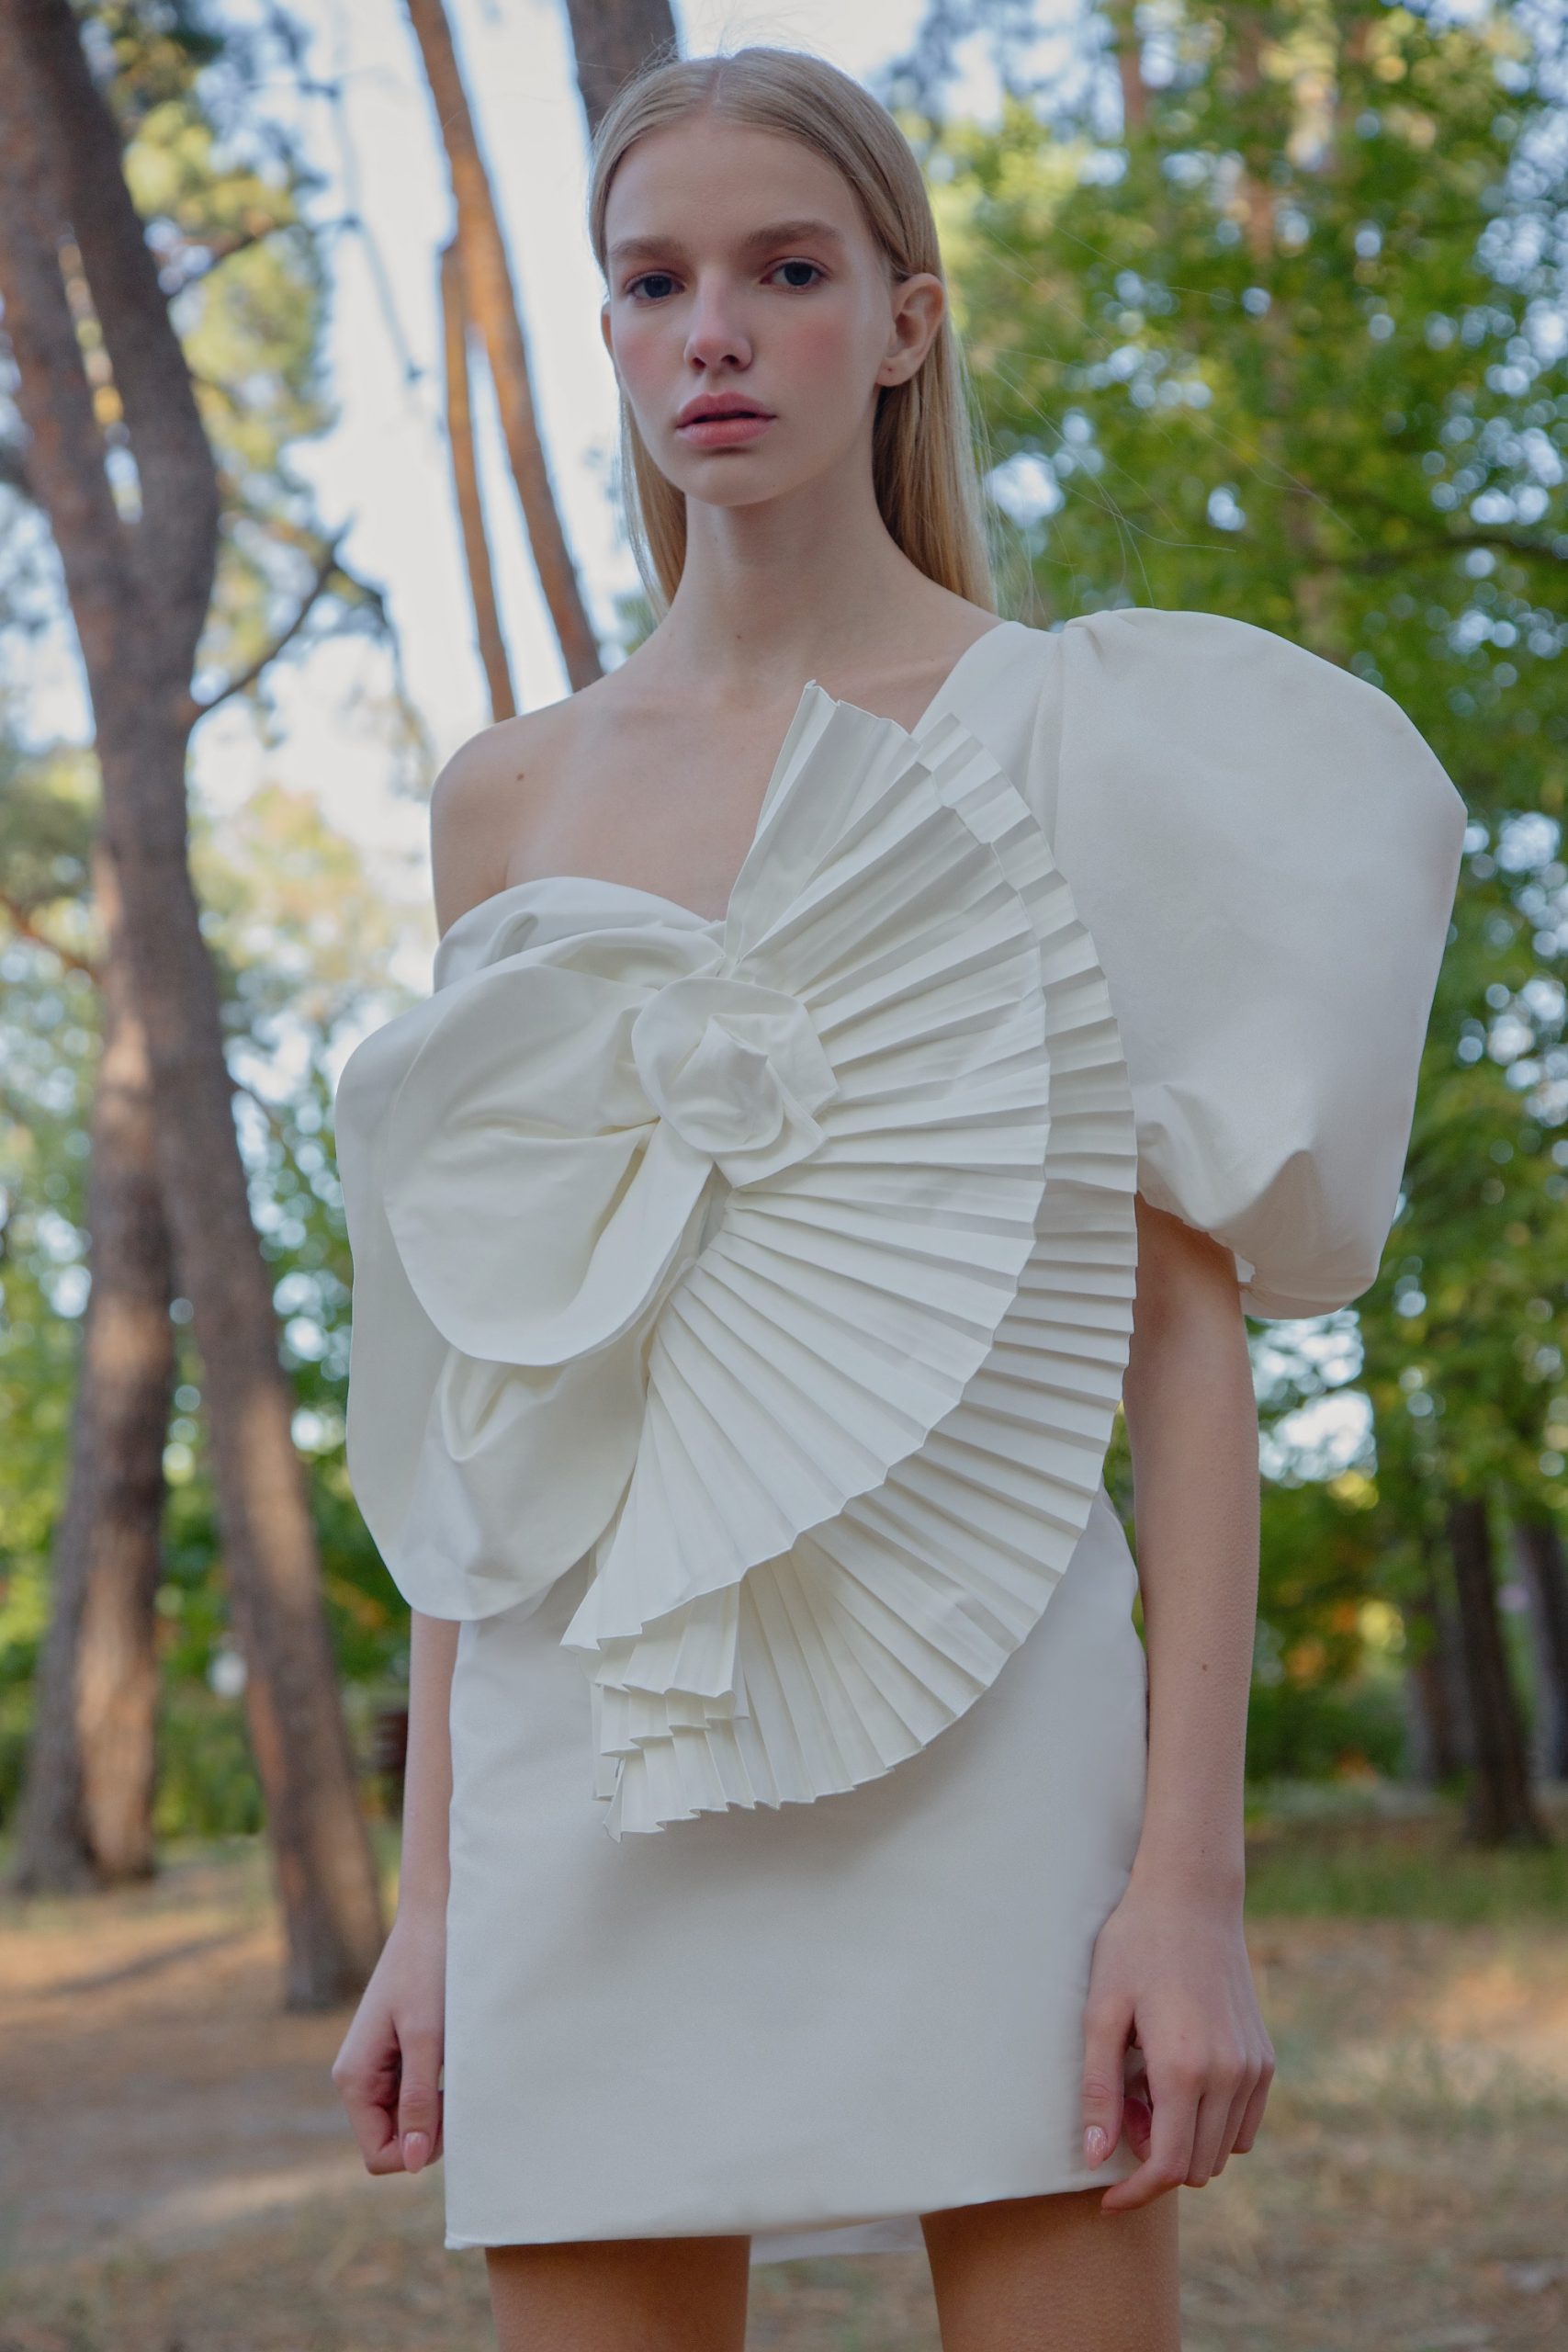 Плаття-медузи з плісированою органзою, блузки з пишними рукавами і міні-спідниці в колекції Nadya Dzyak SS 2021